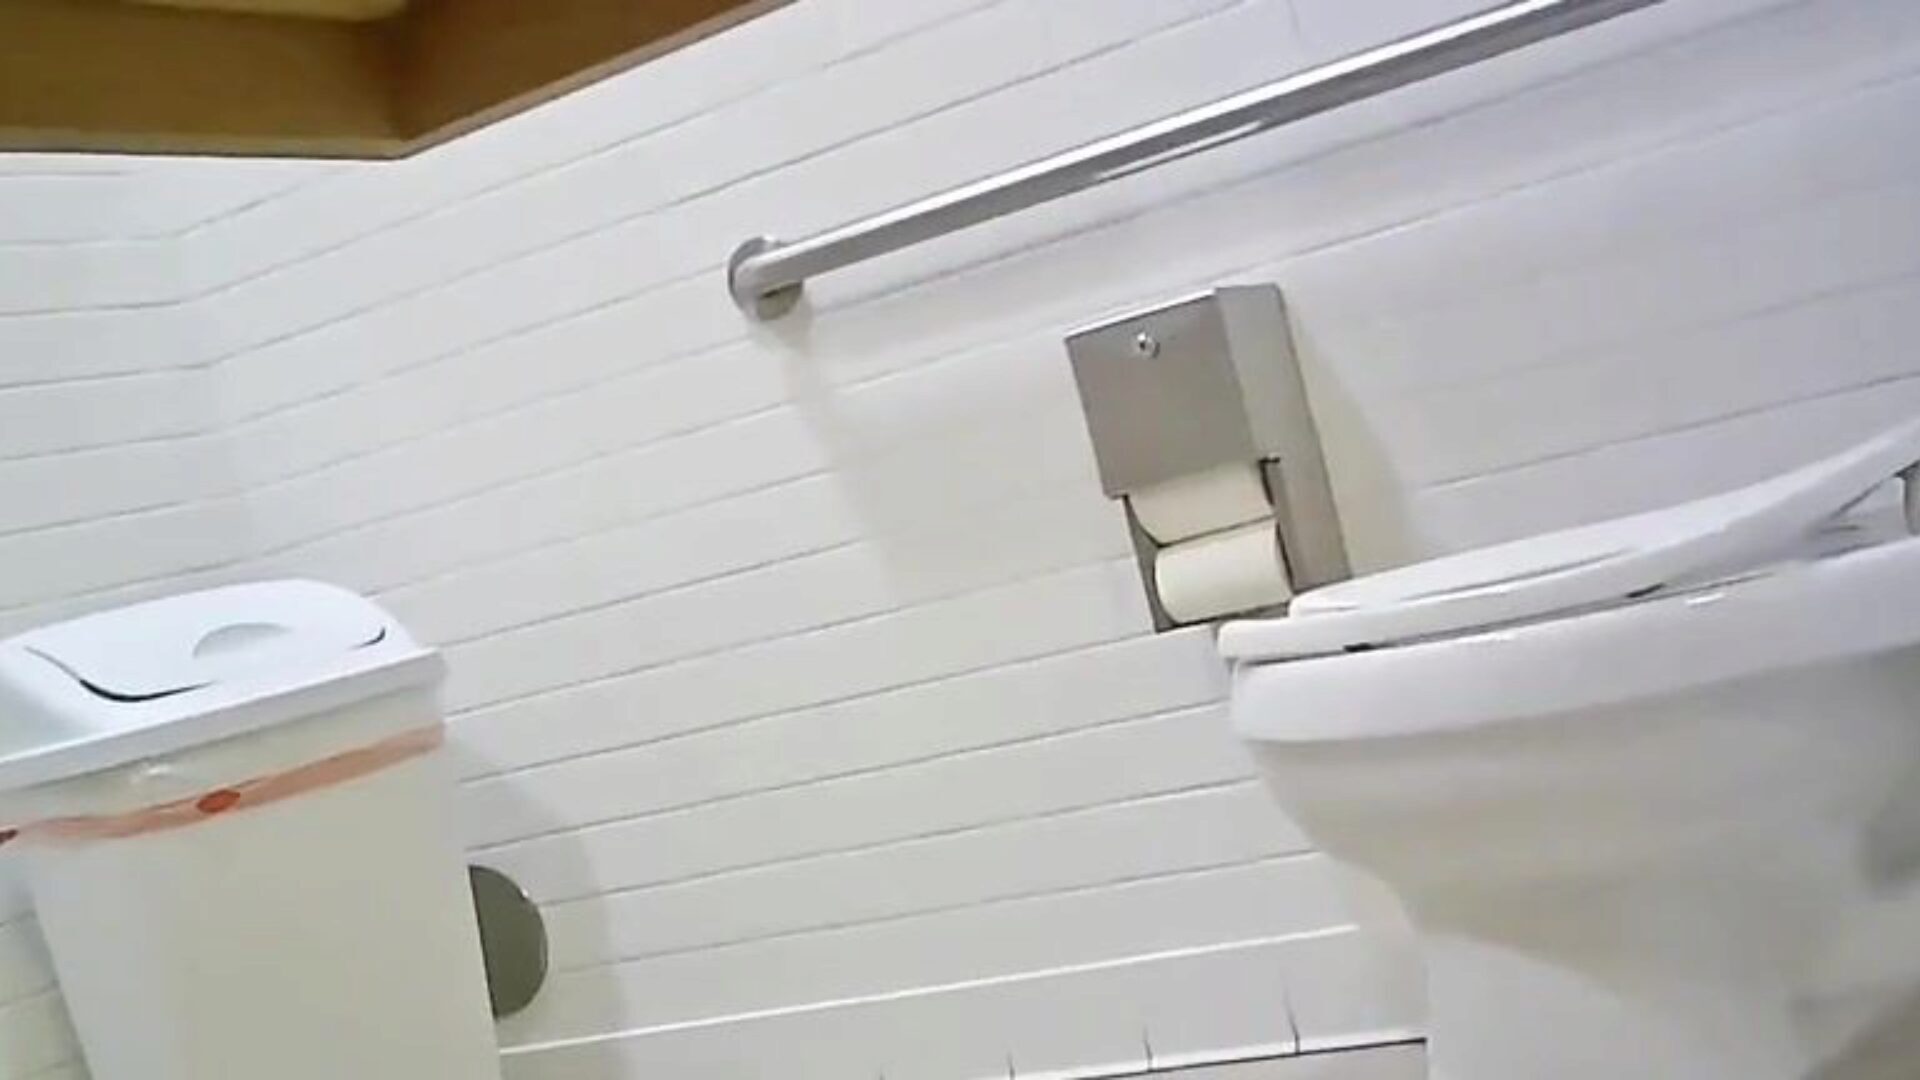 telecamera nascosta per toilette - adatta gazoo ideale hotty guarda questo, dimmi cosa ne pensi; p '